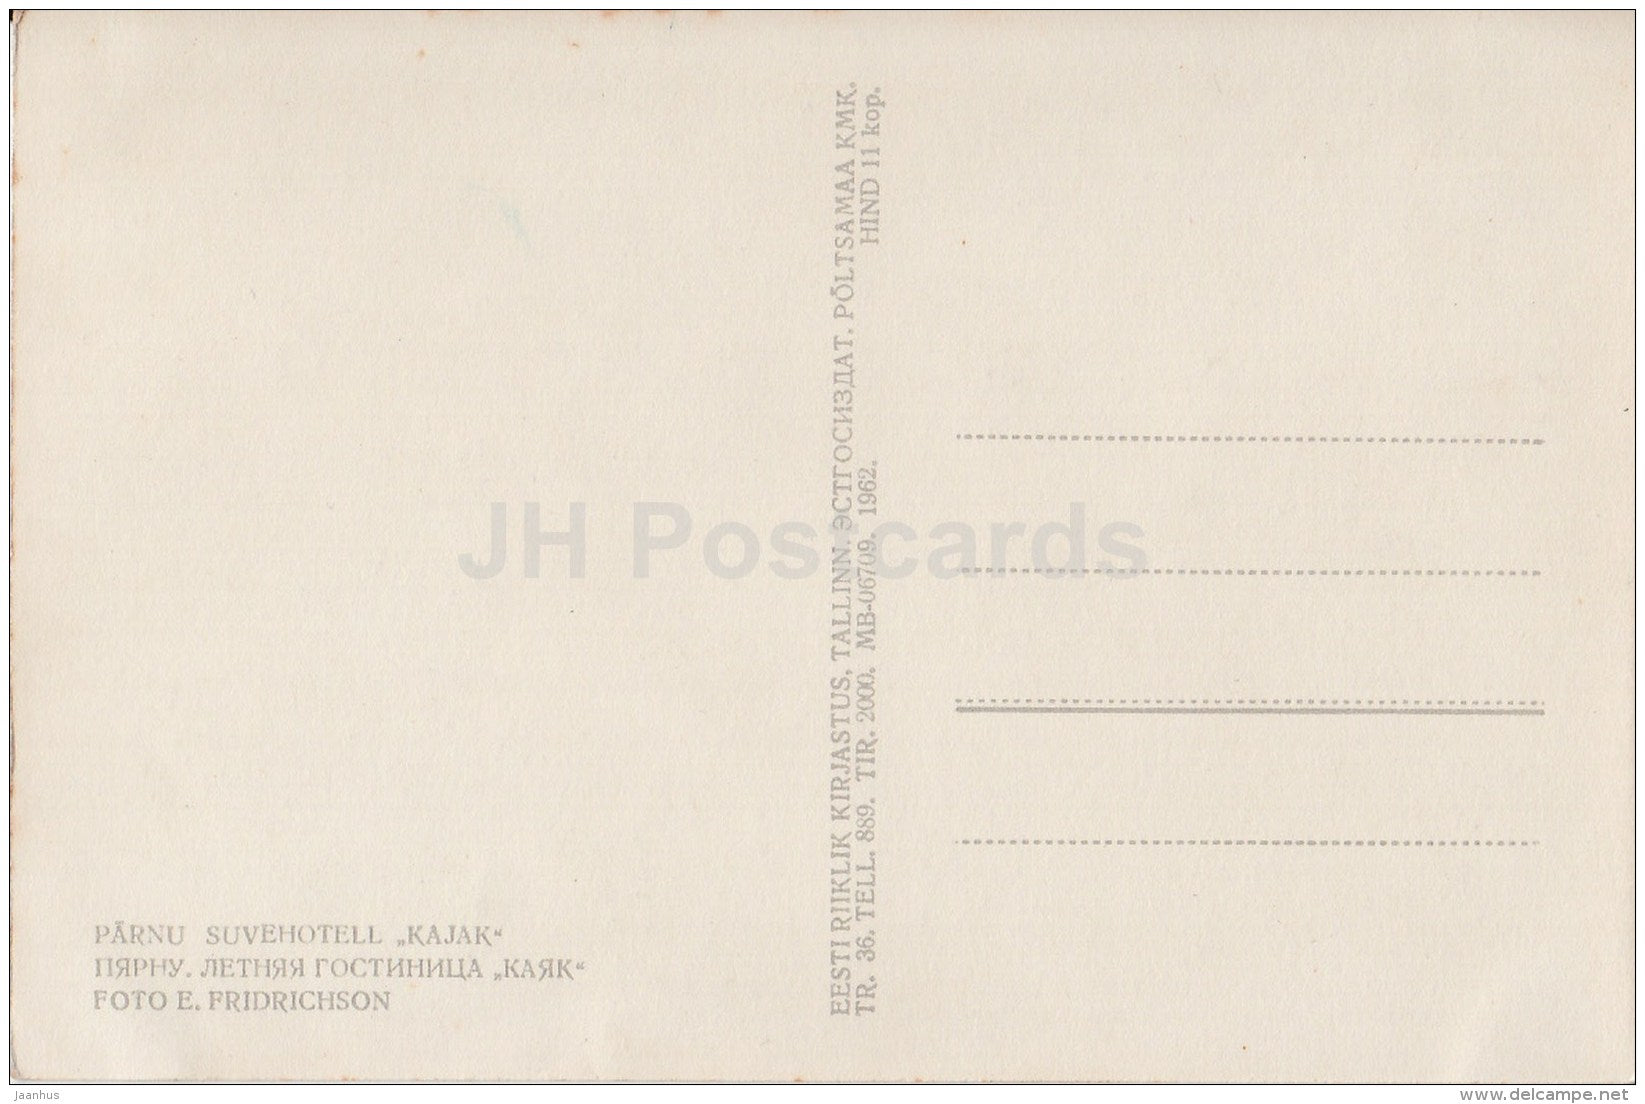 Summer Hotel Kajak (Seagull) - Pärnu - 1962 - Estonia USSR - unused - JH Postcards